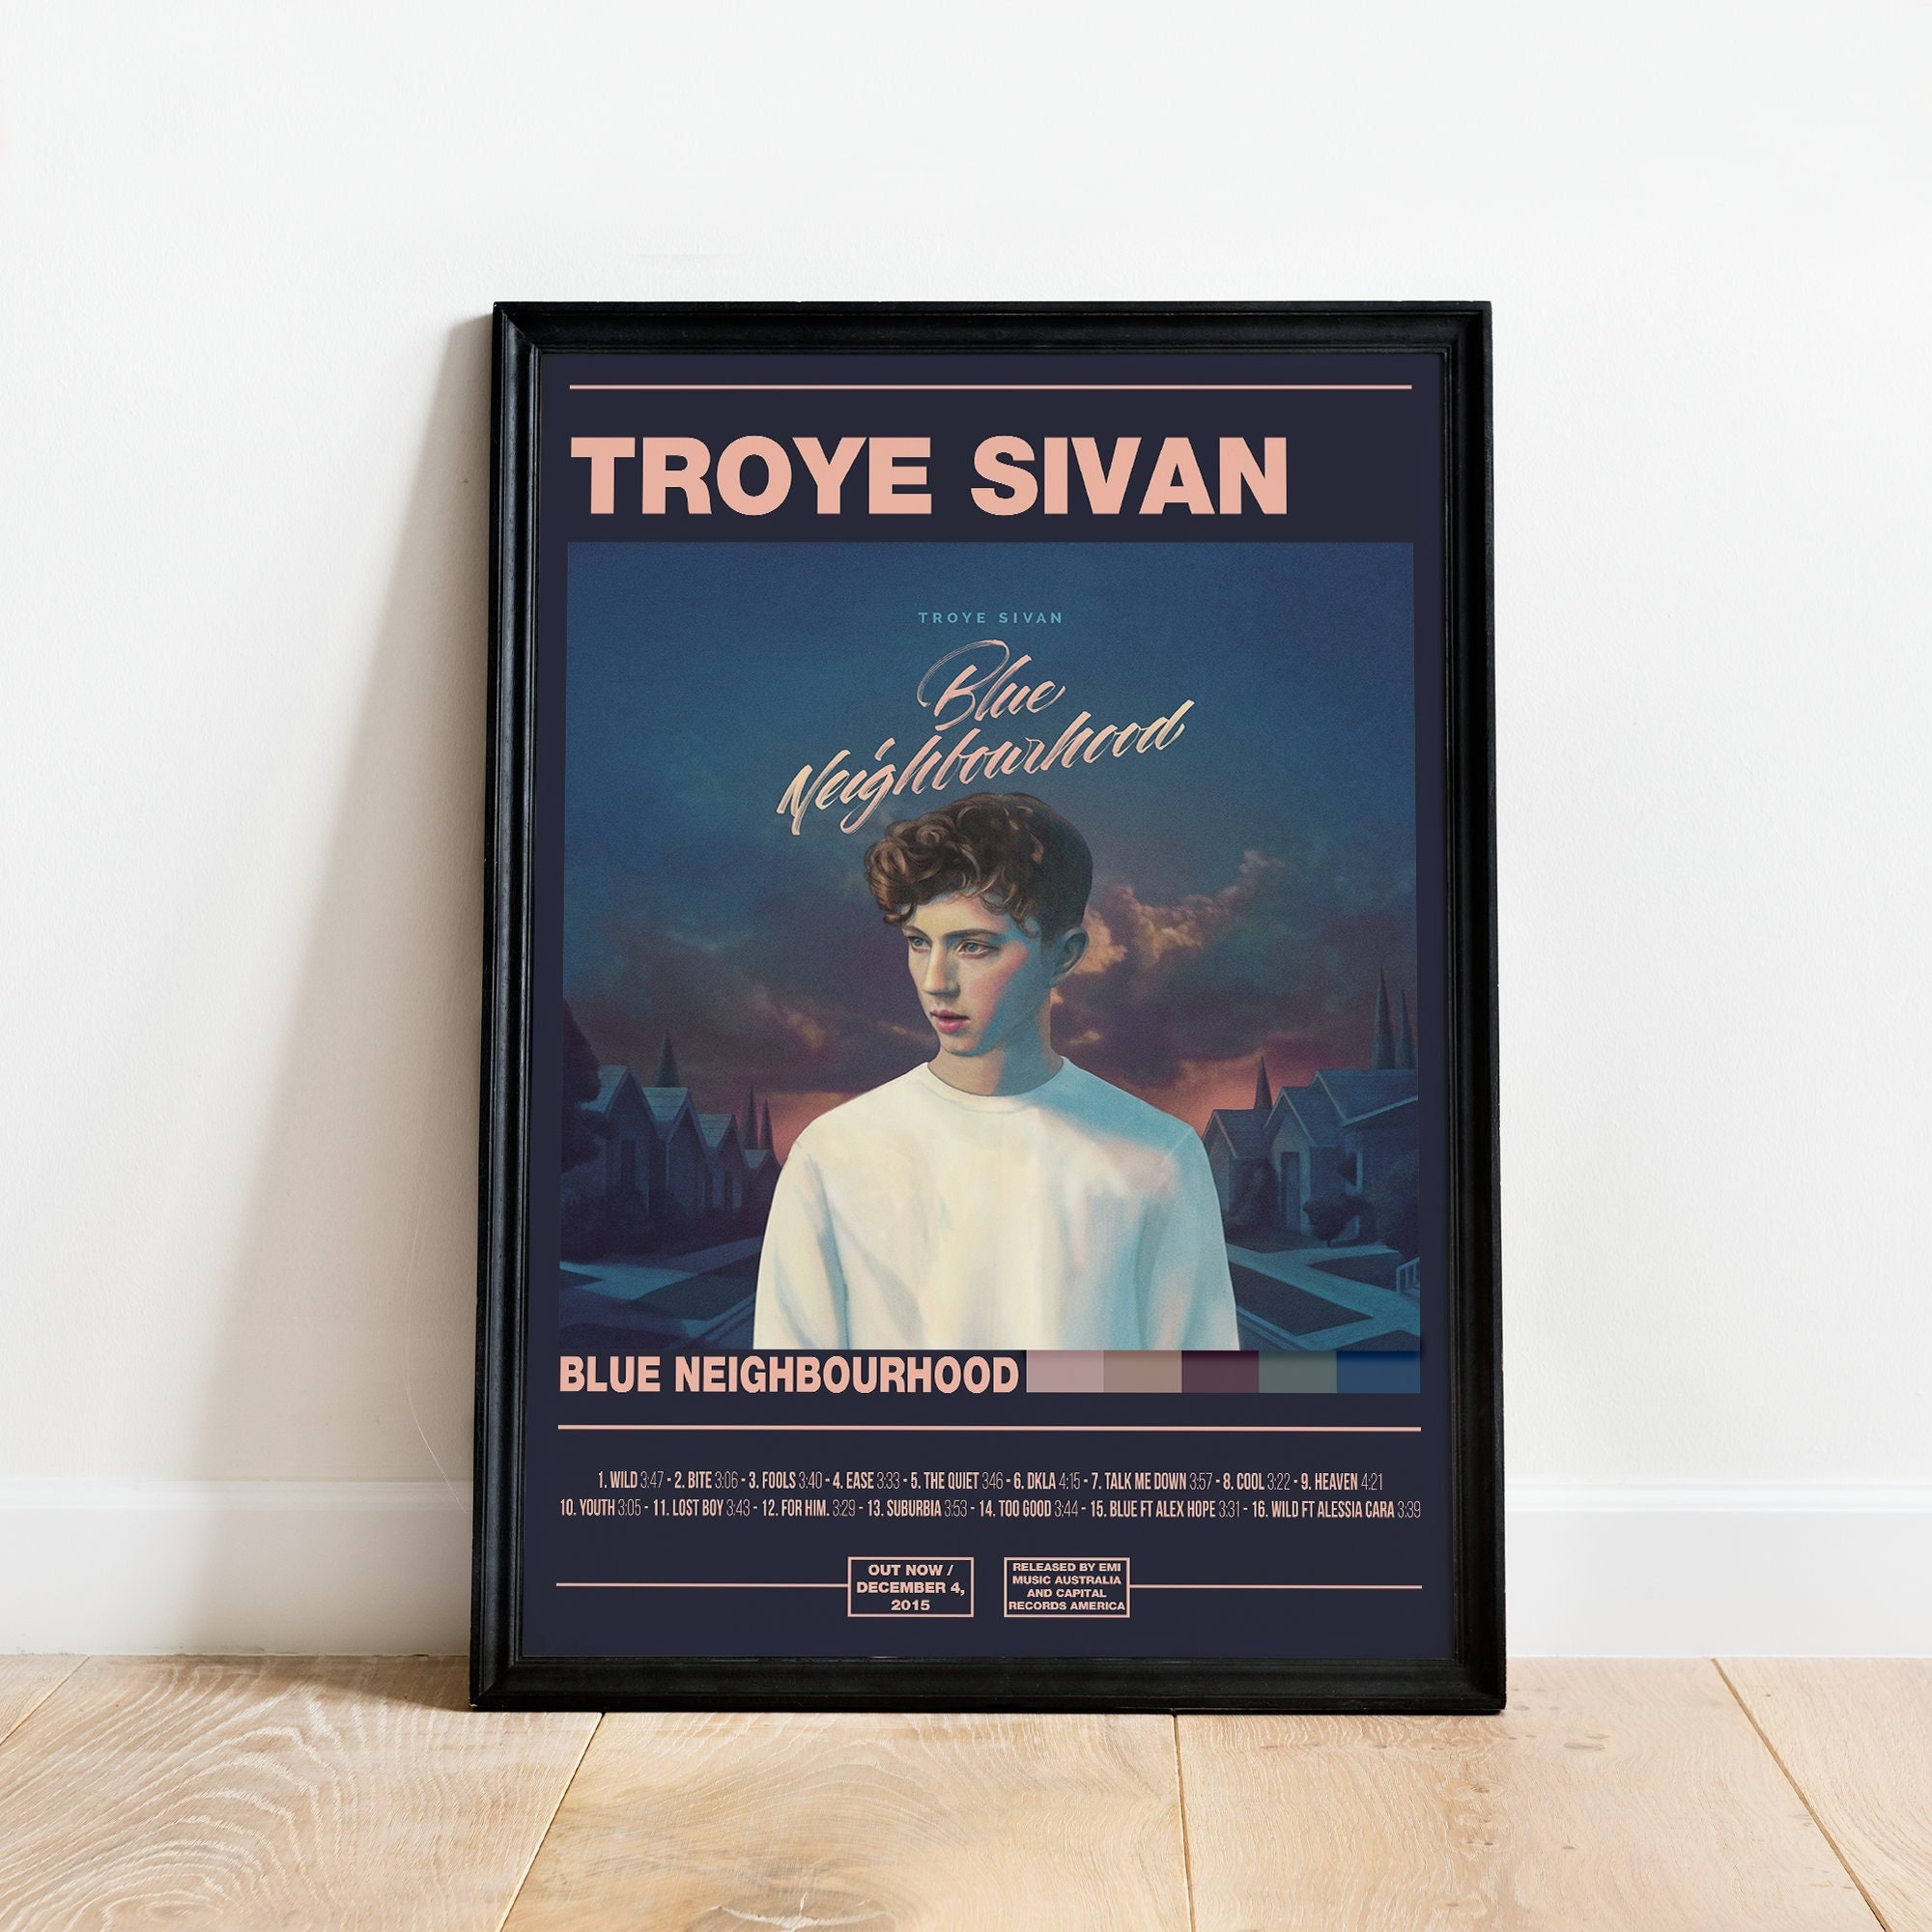 Download free Troye Sivan Wild Lyrics Art Wallpaper 